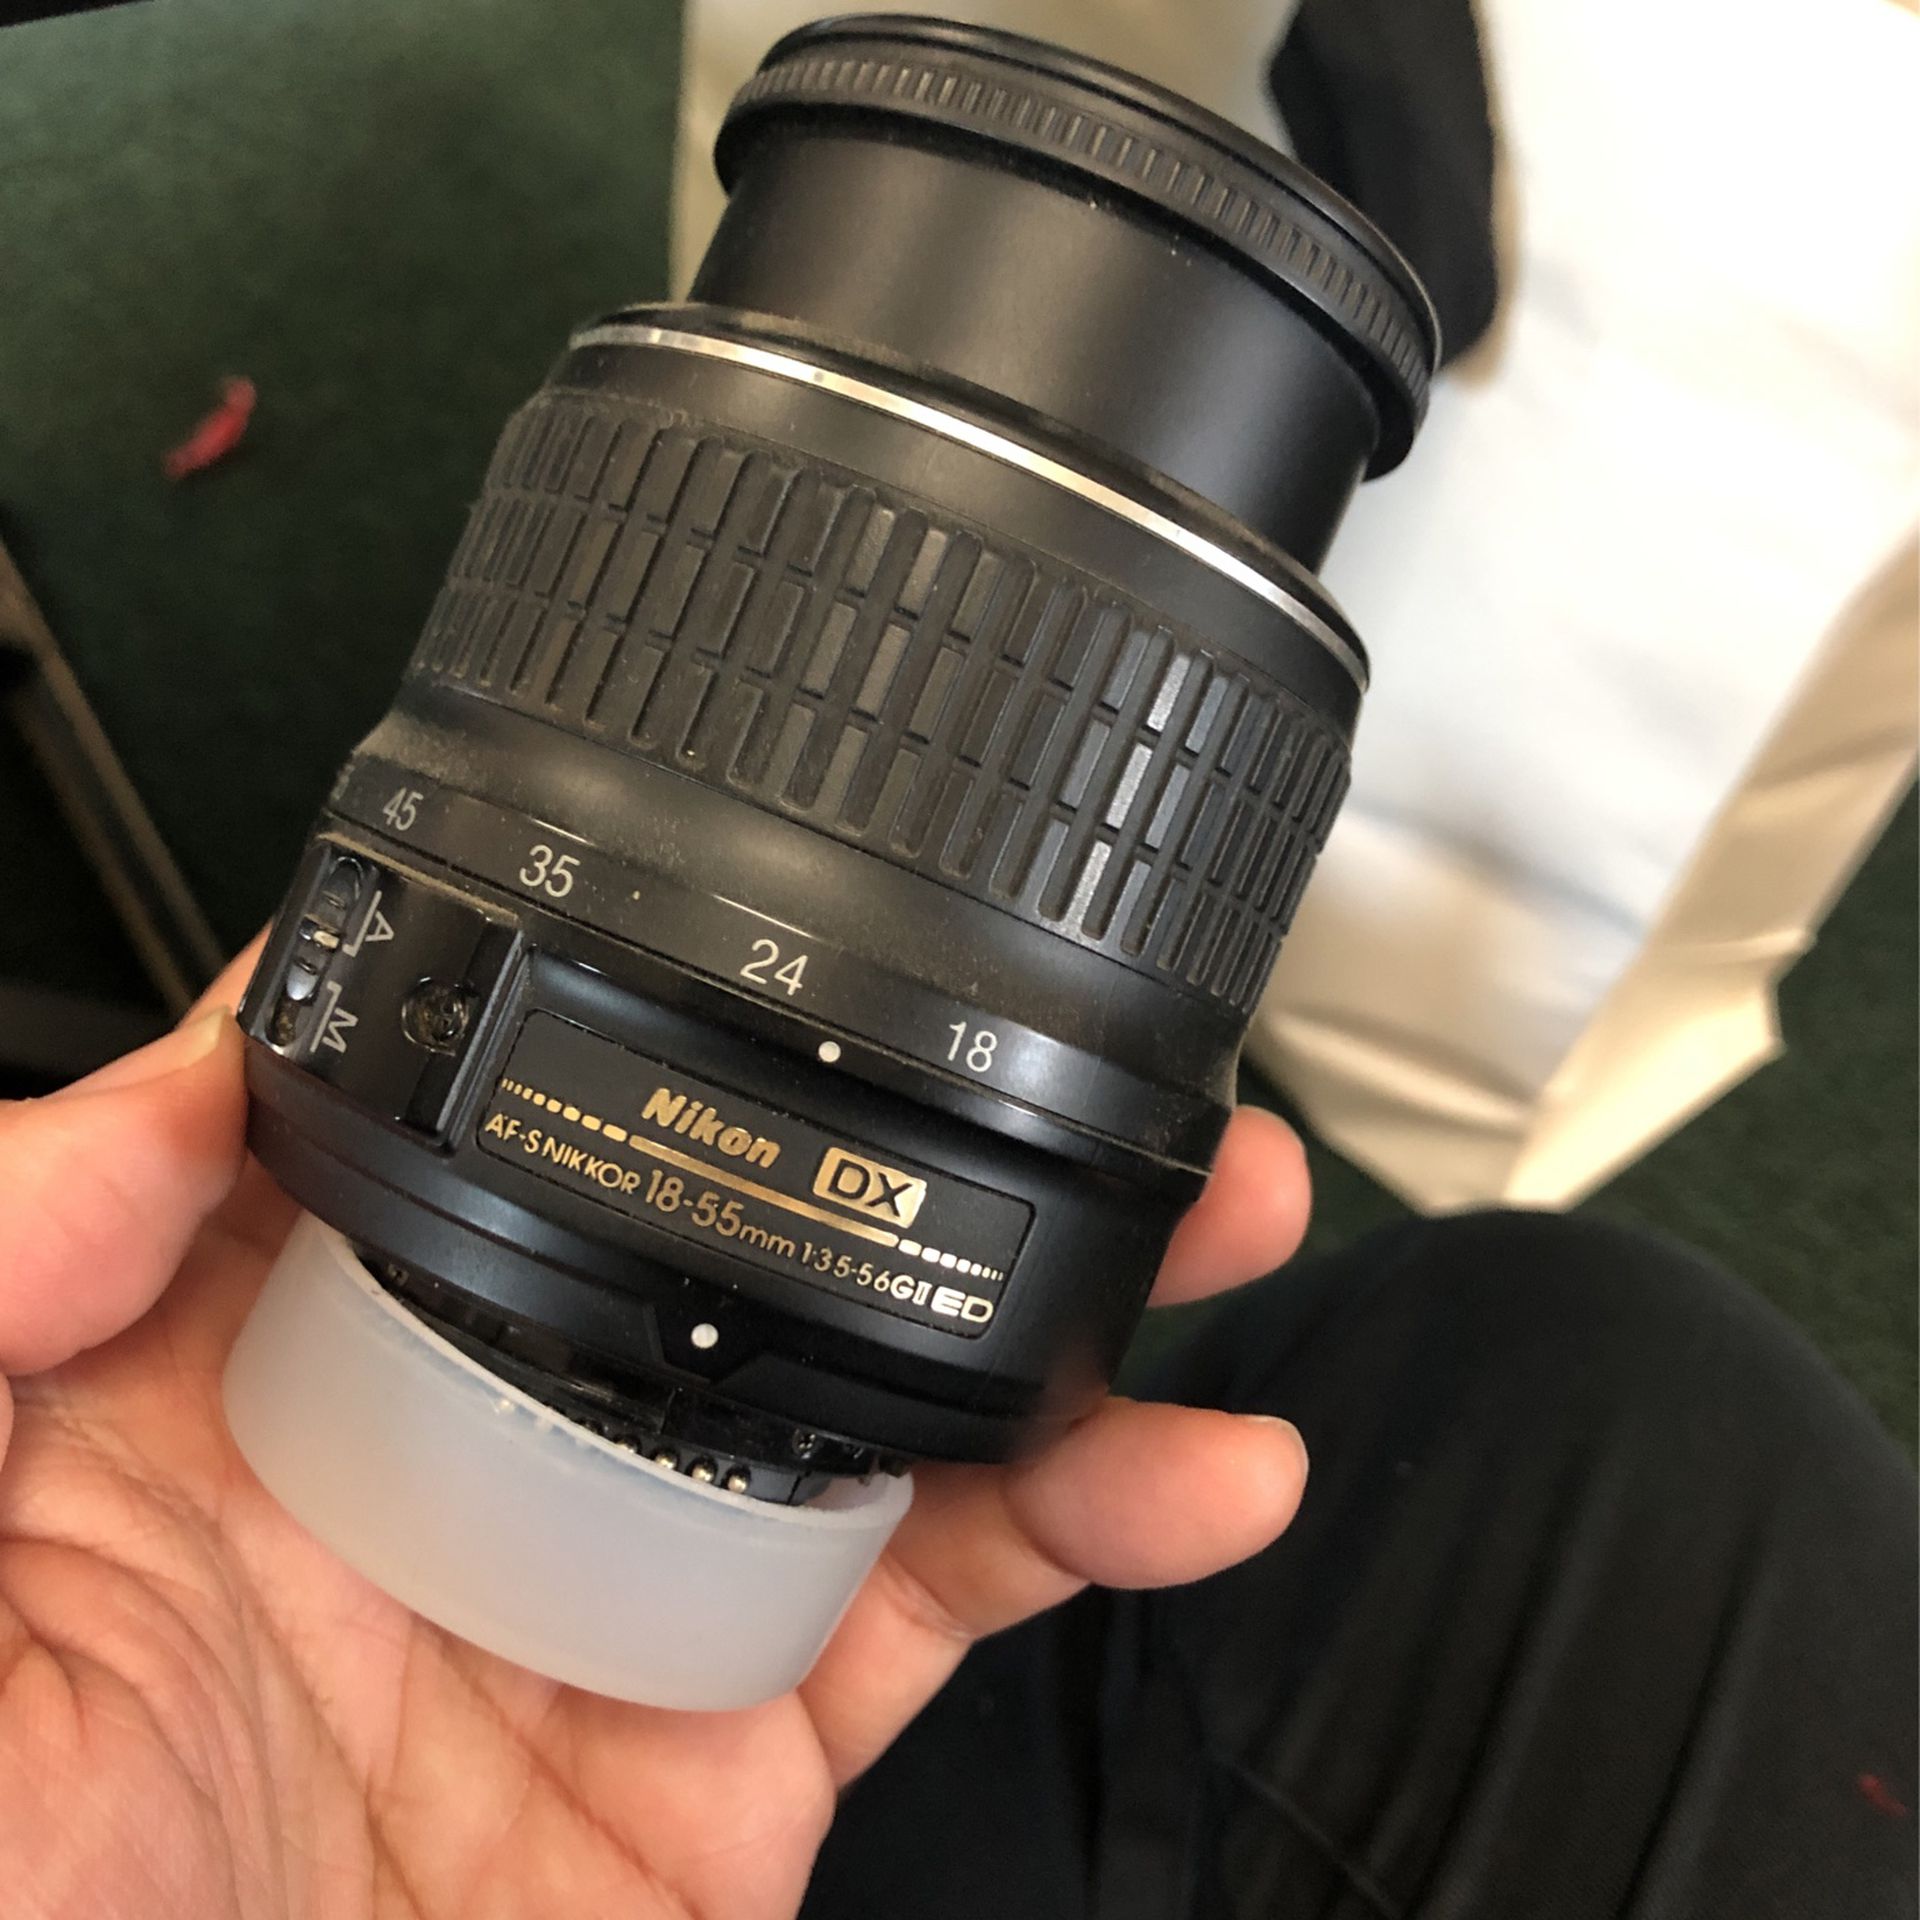 Nikon DX 18-55mm Lens - Broken -Jammed